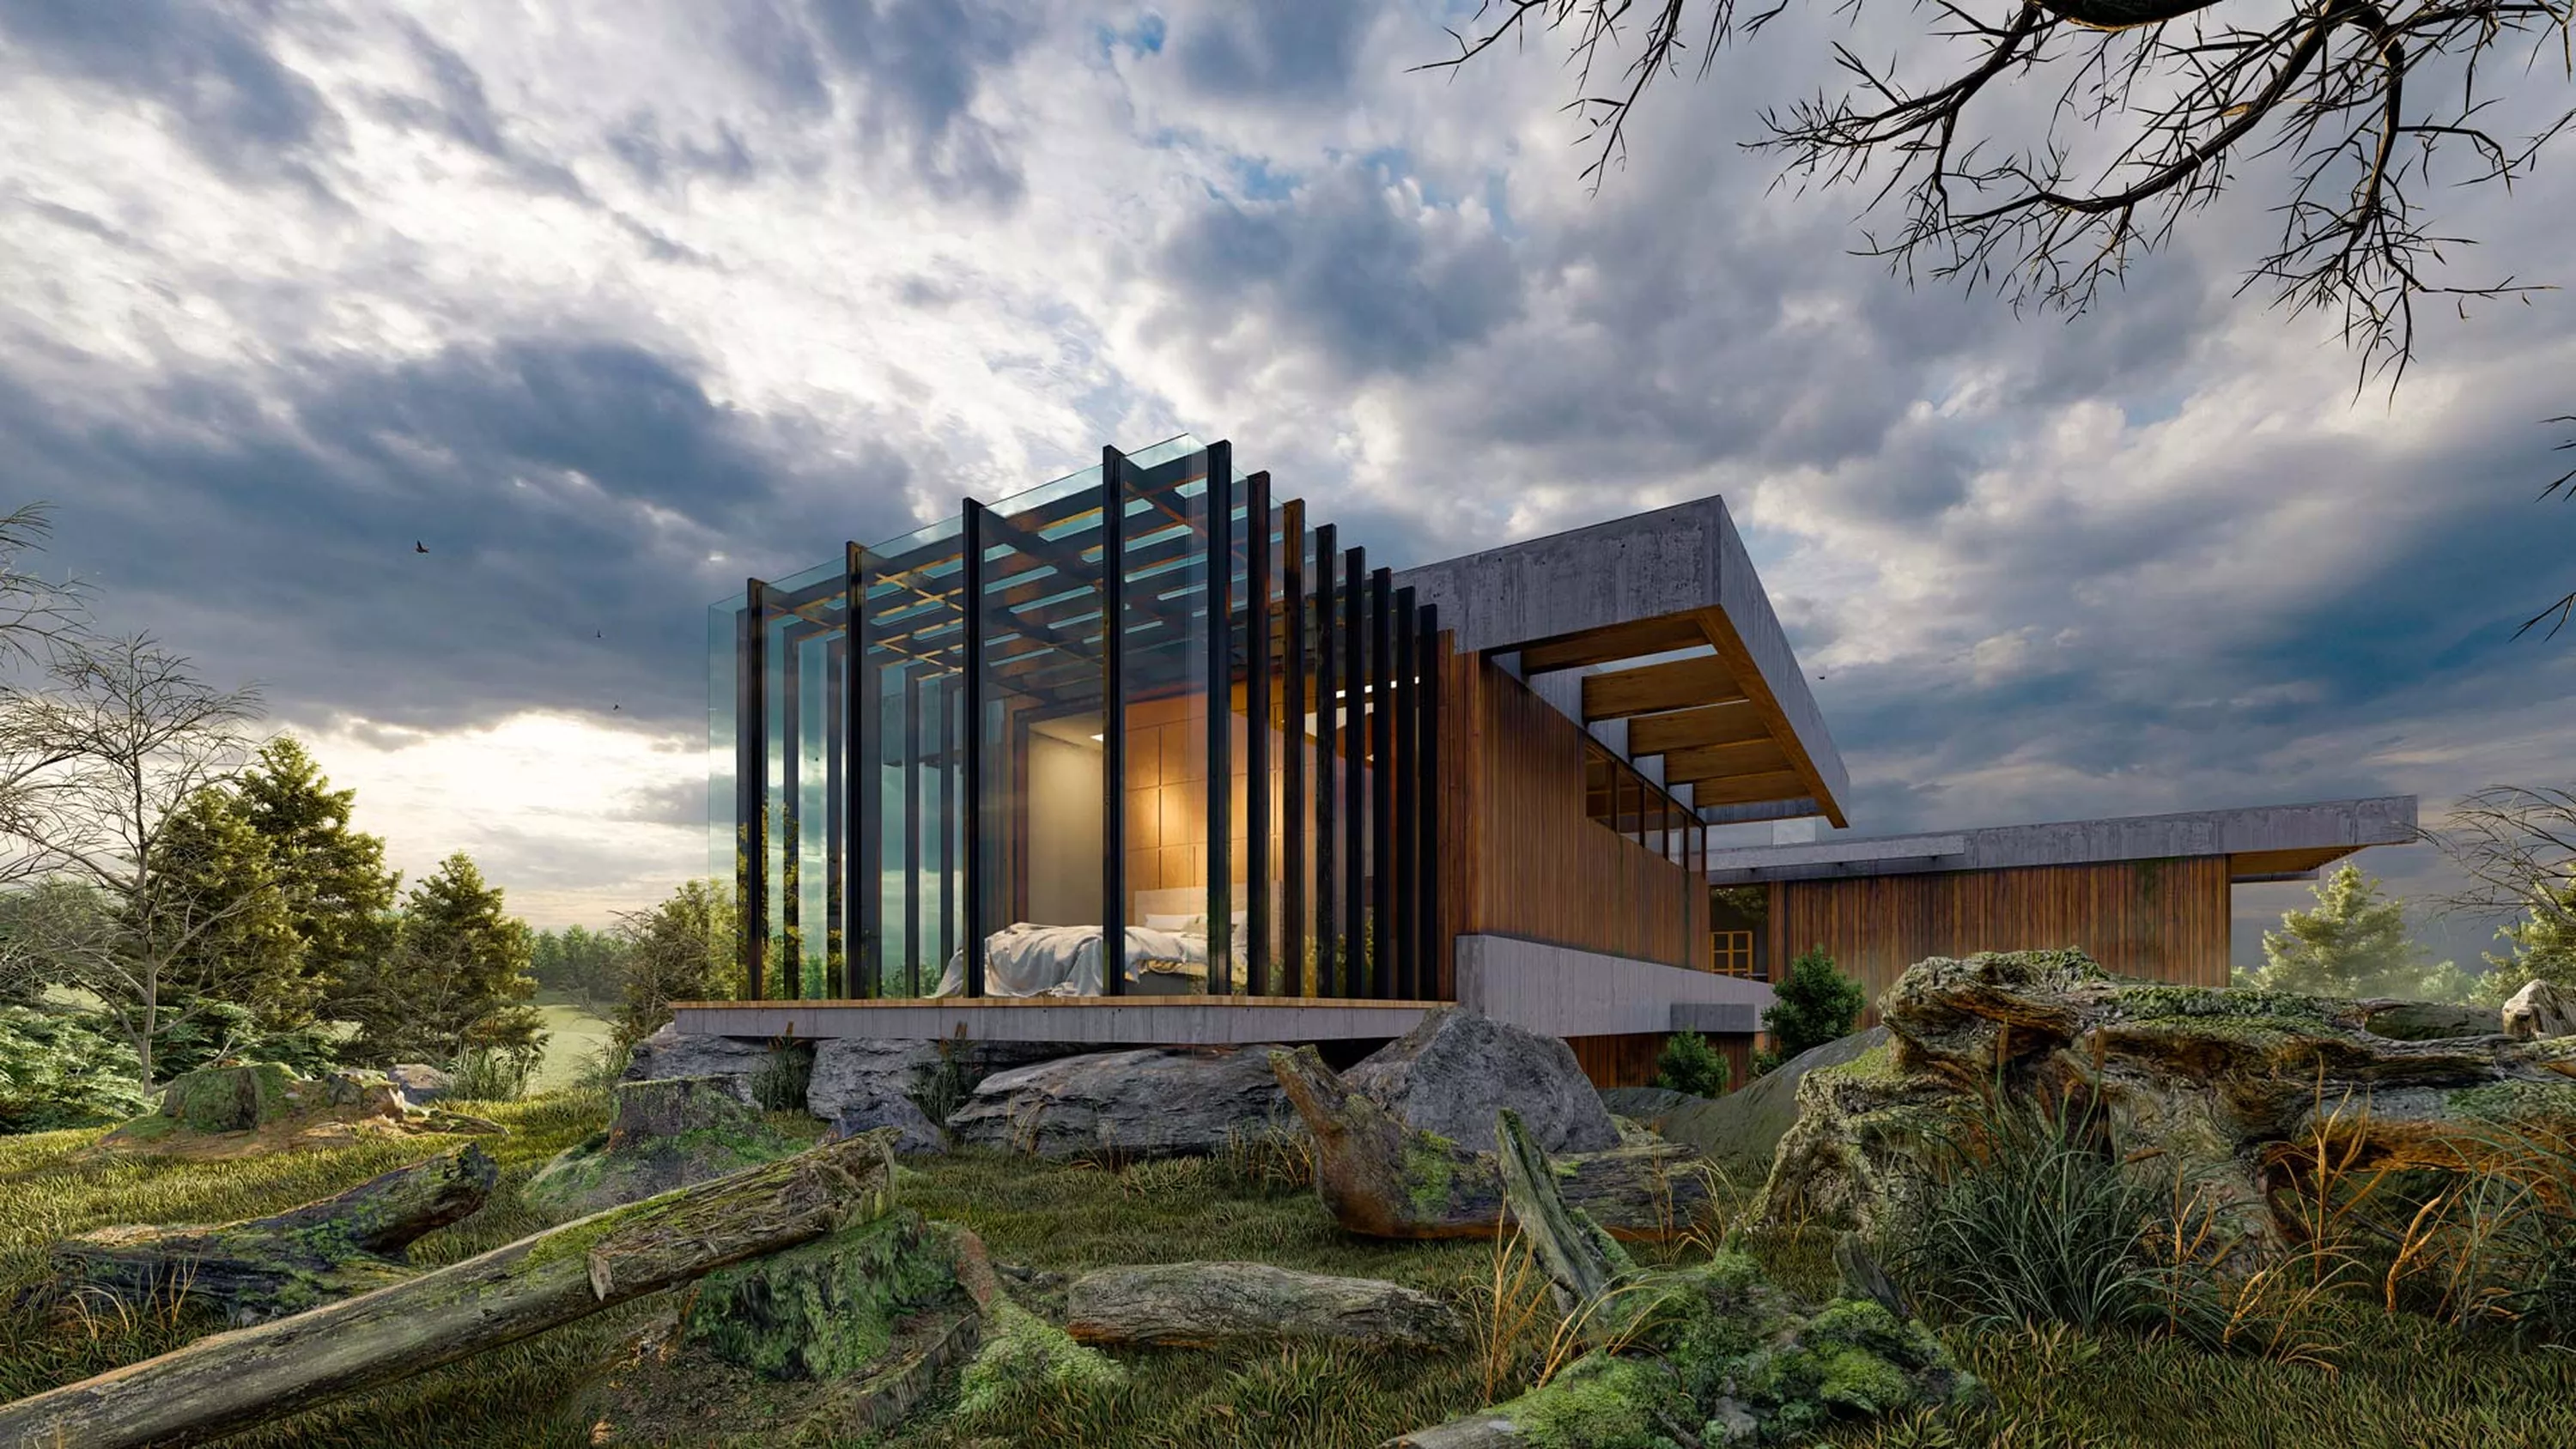 Architekturvisualisierung eines Wohnhauses in der Natur mit Lumion